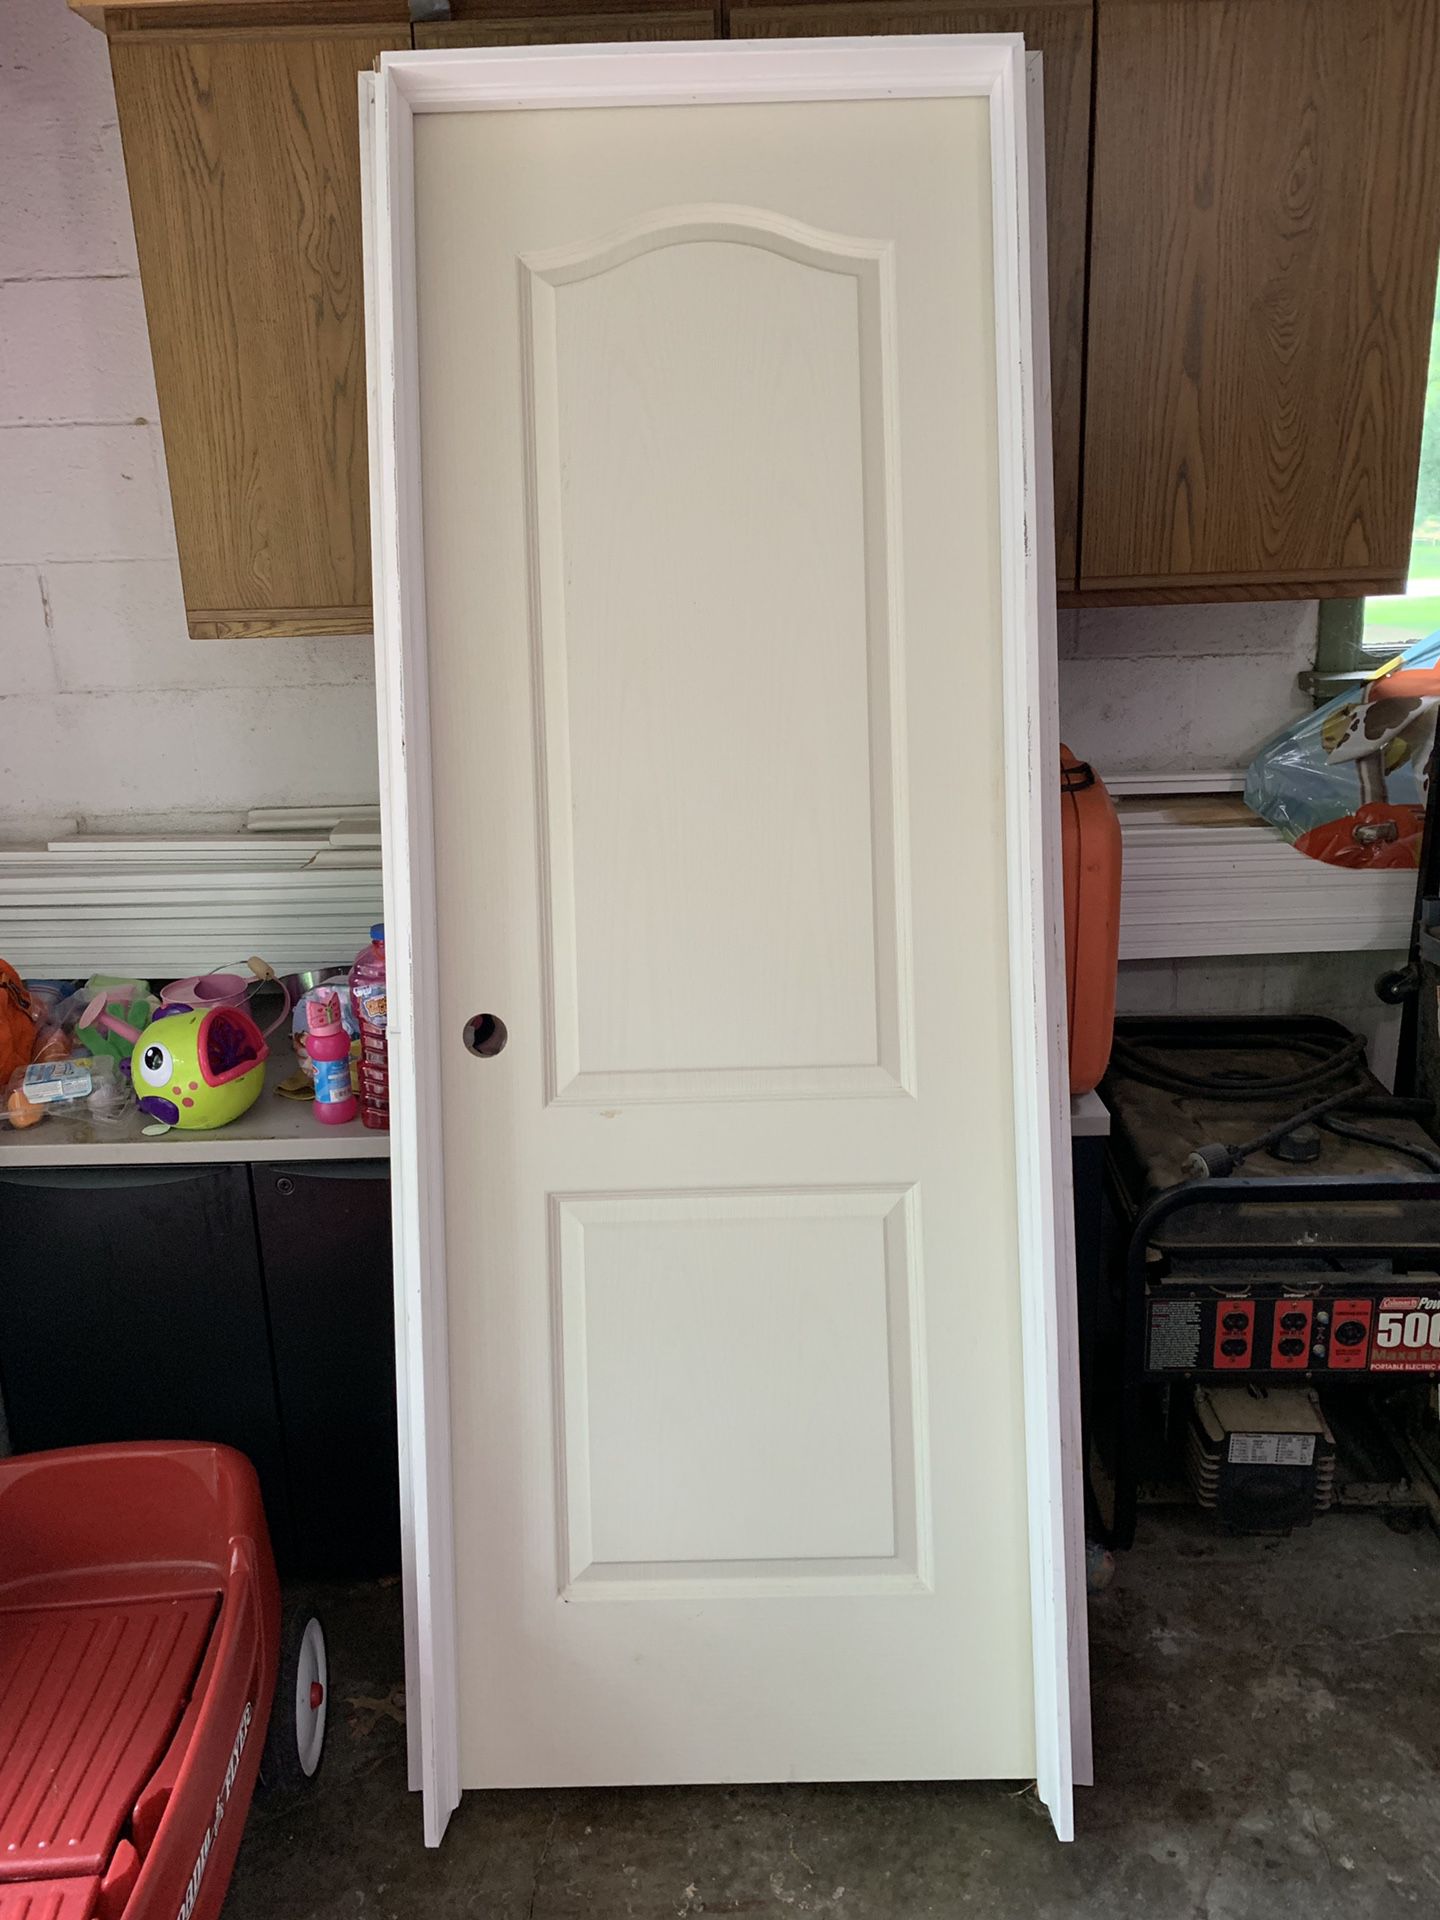 NEW-Standard Size Door